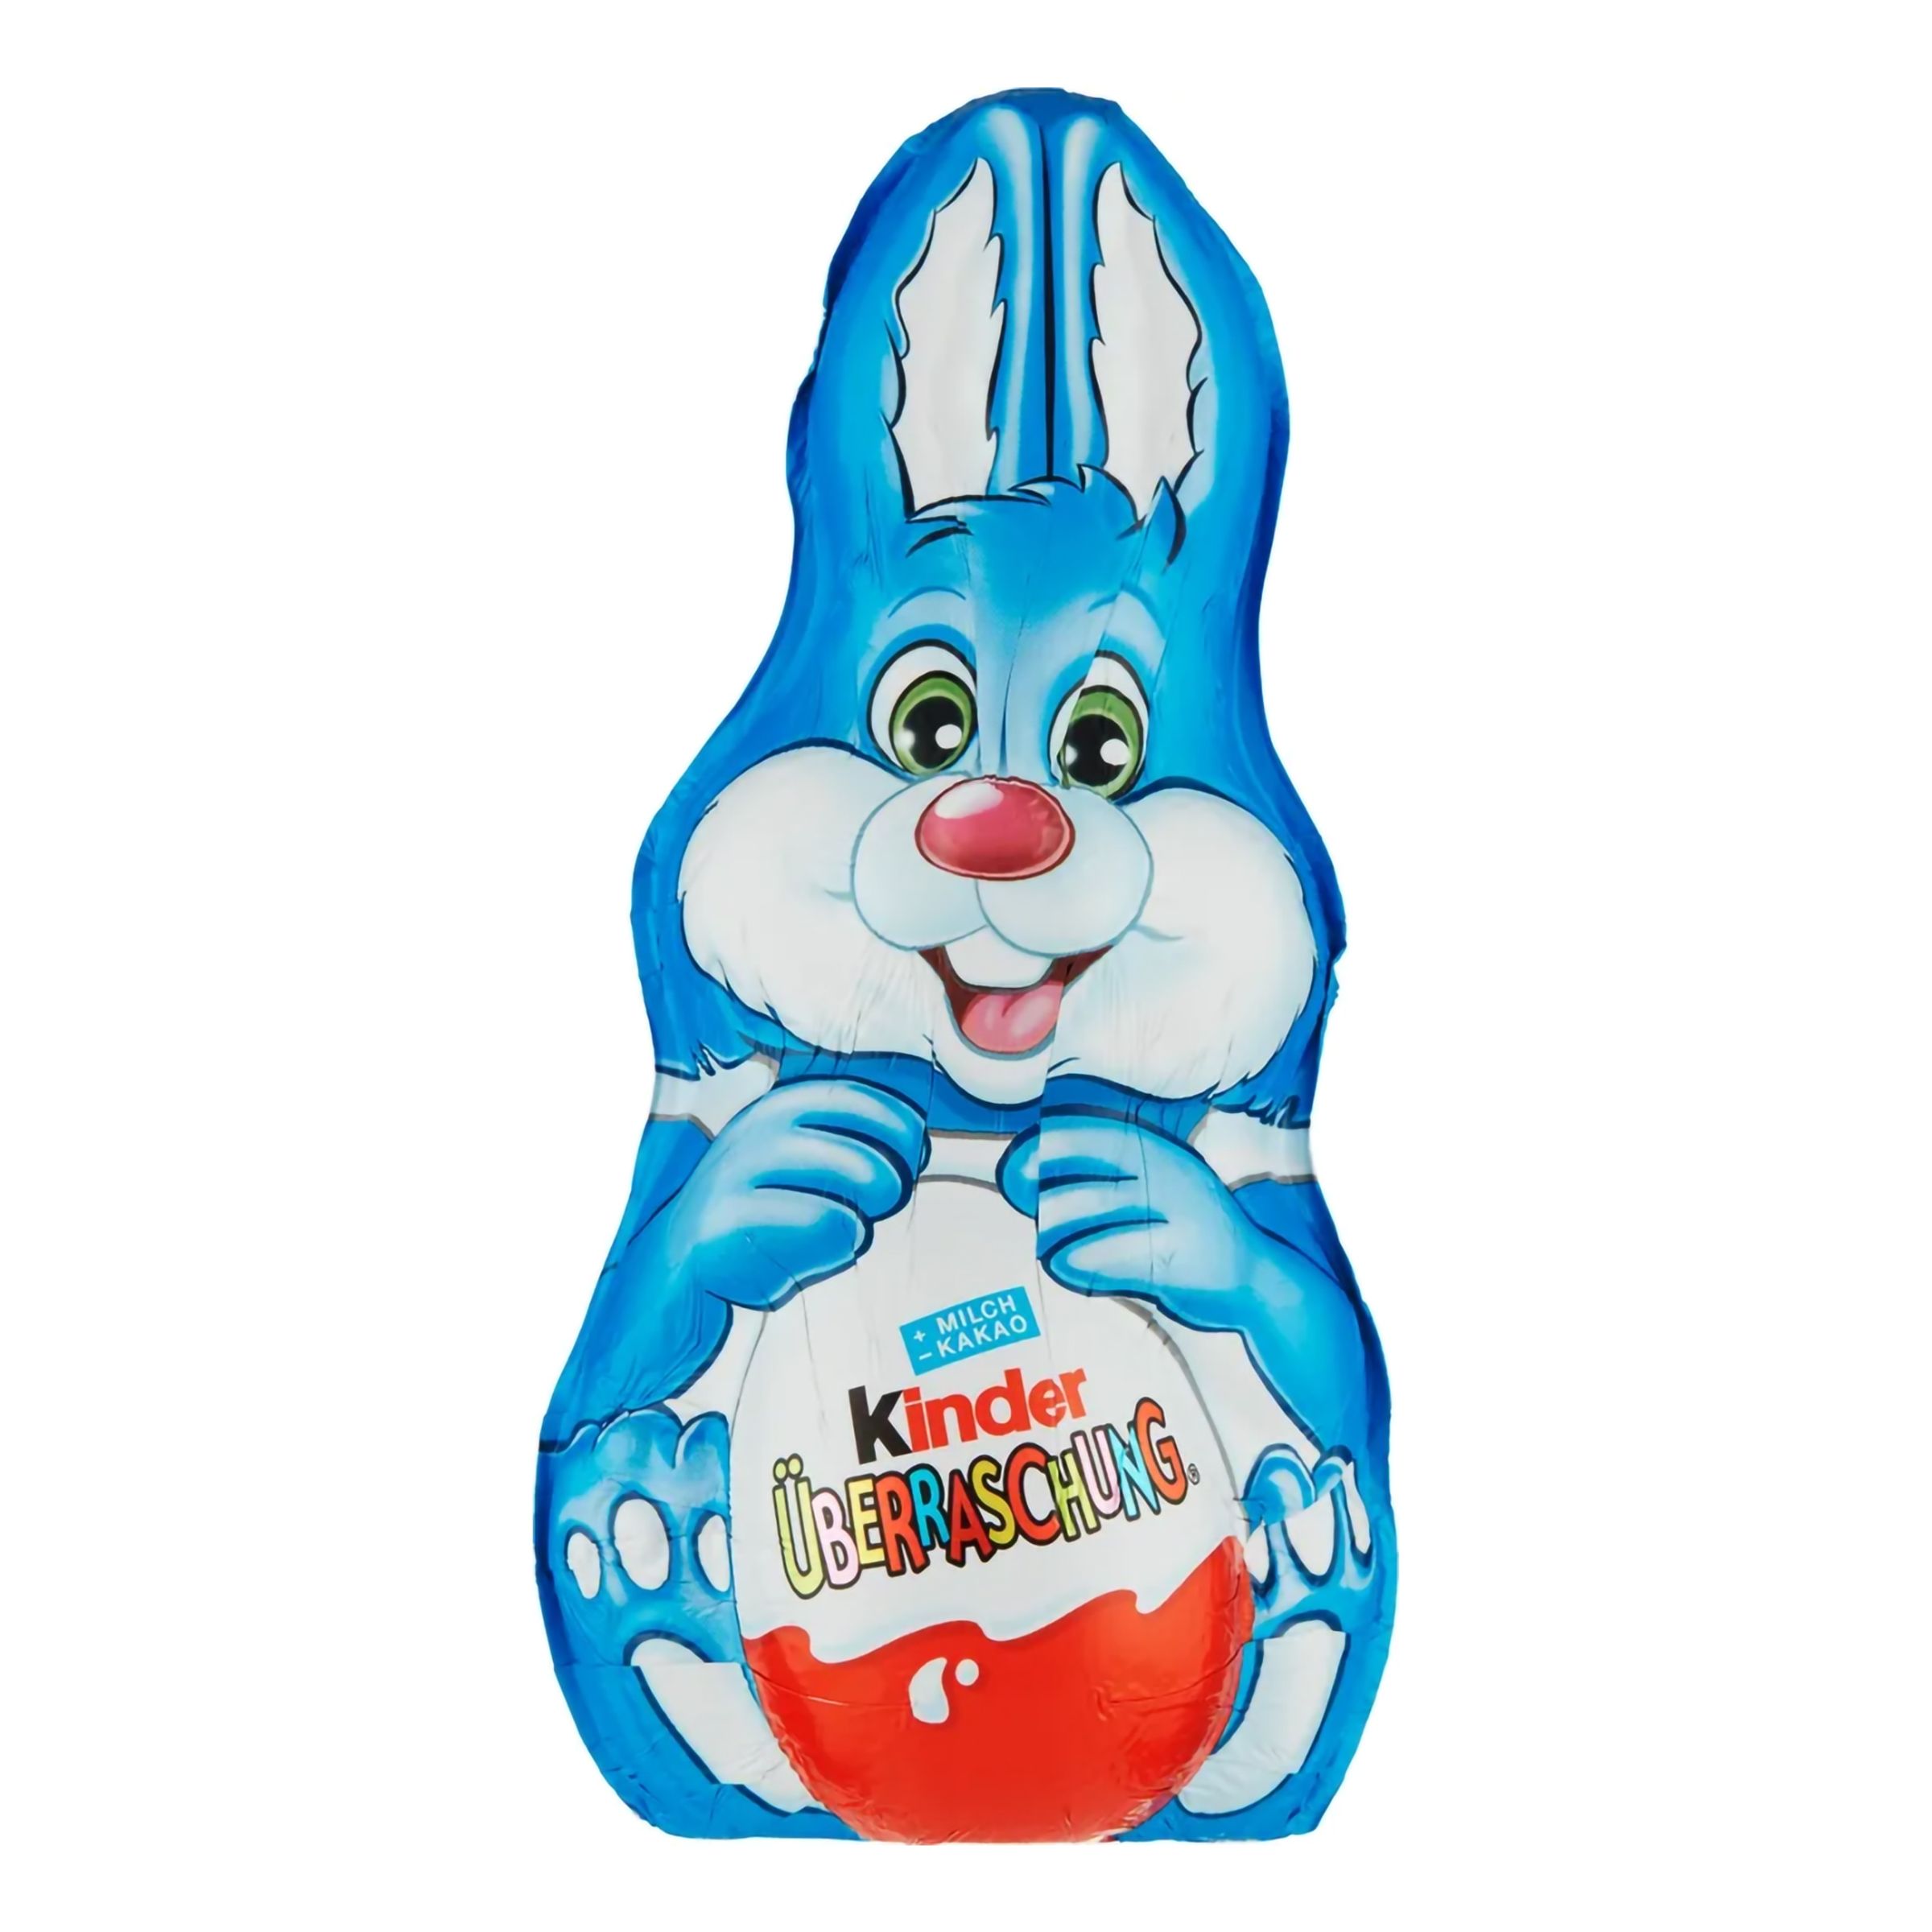 Kinder Surprise Bunny Blå - 75 gram